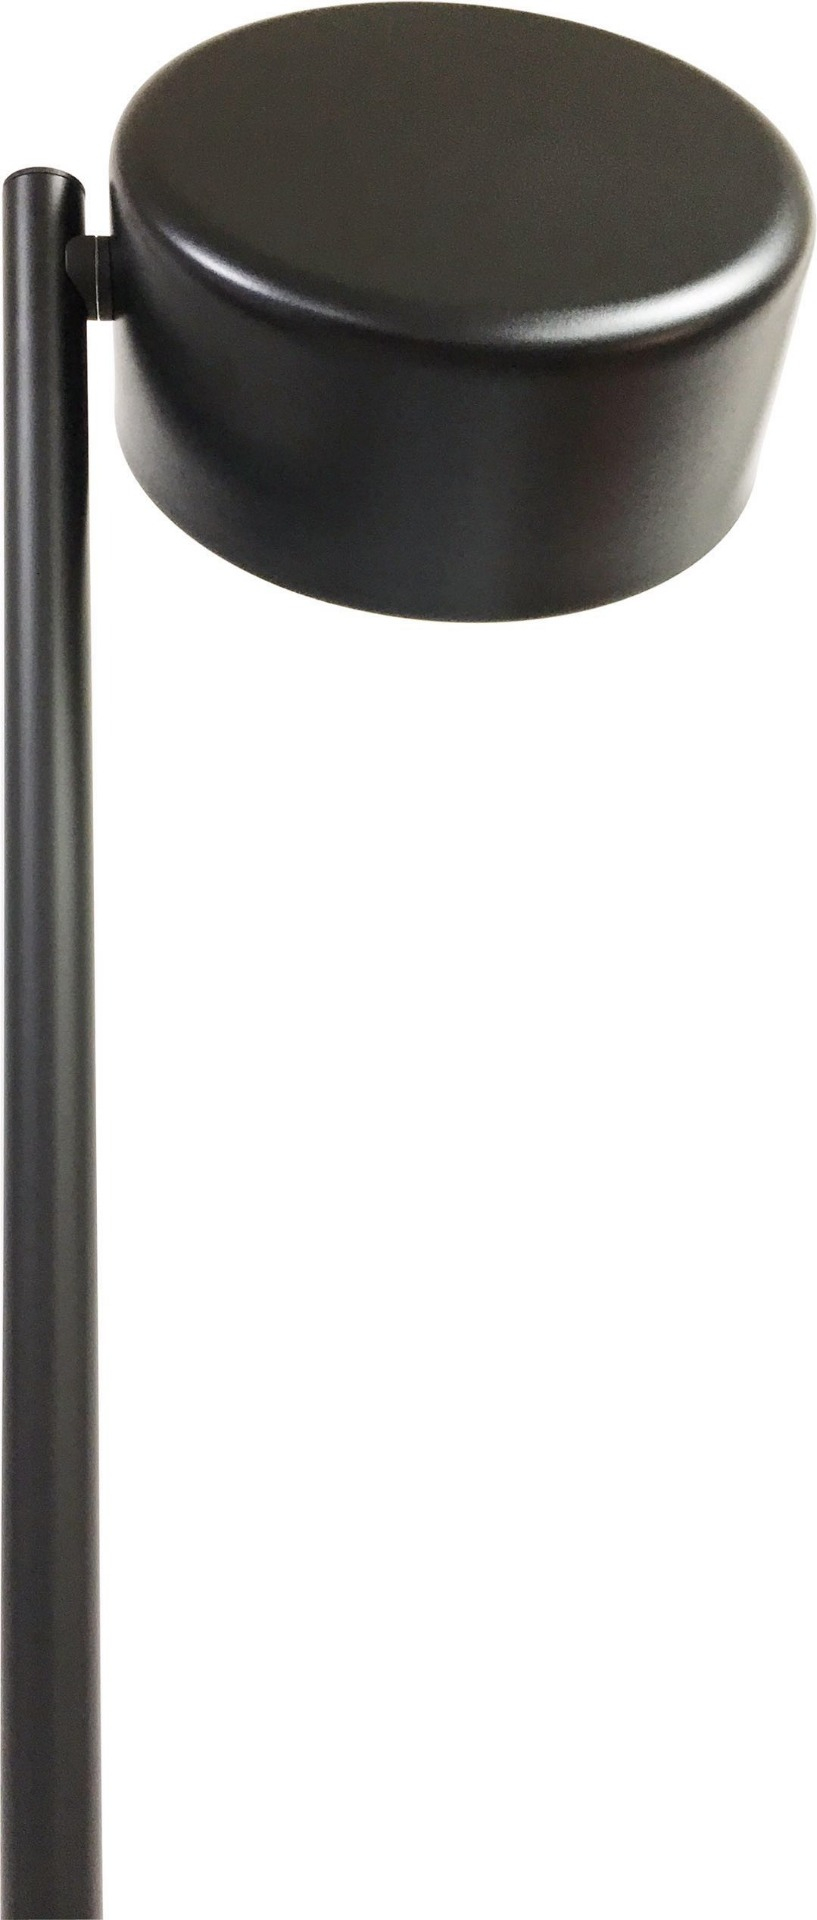 Faro Led Floor Lamp 50 Watt 5000 Lumen 3000 K Rotative intended for dimensions 817 X 1920